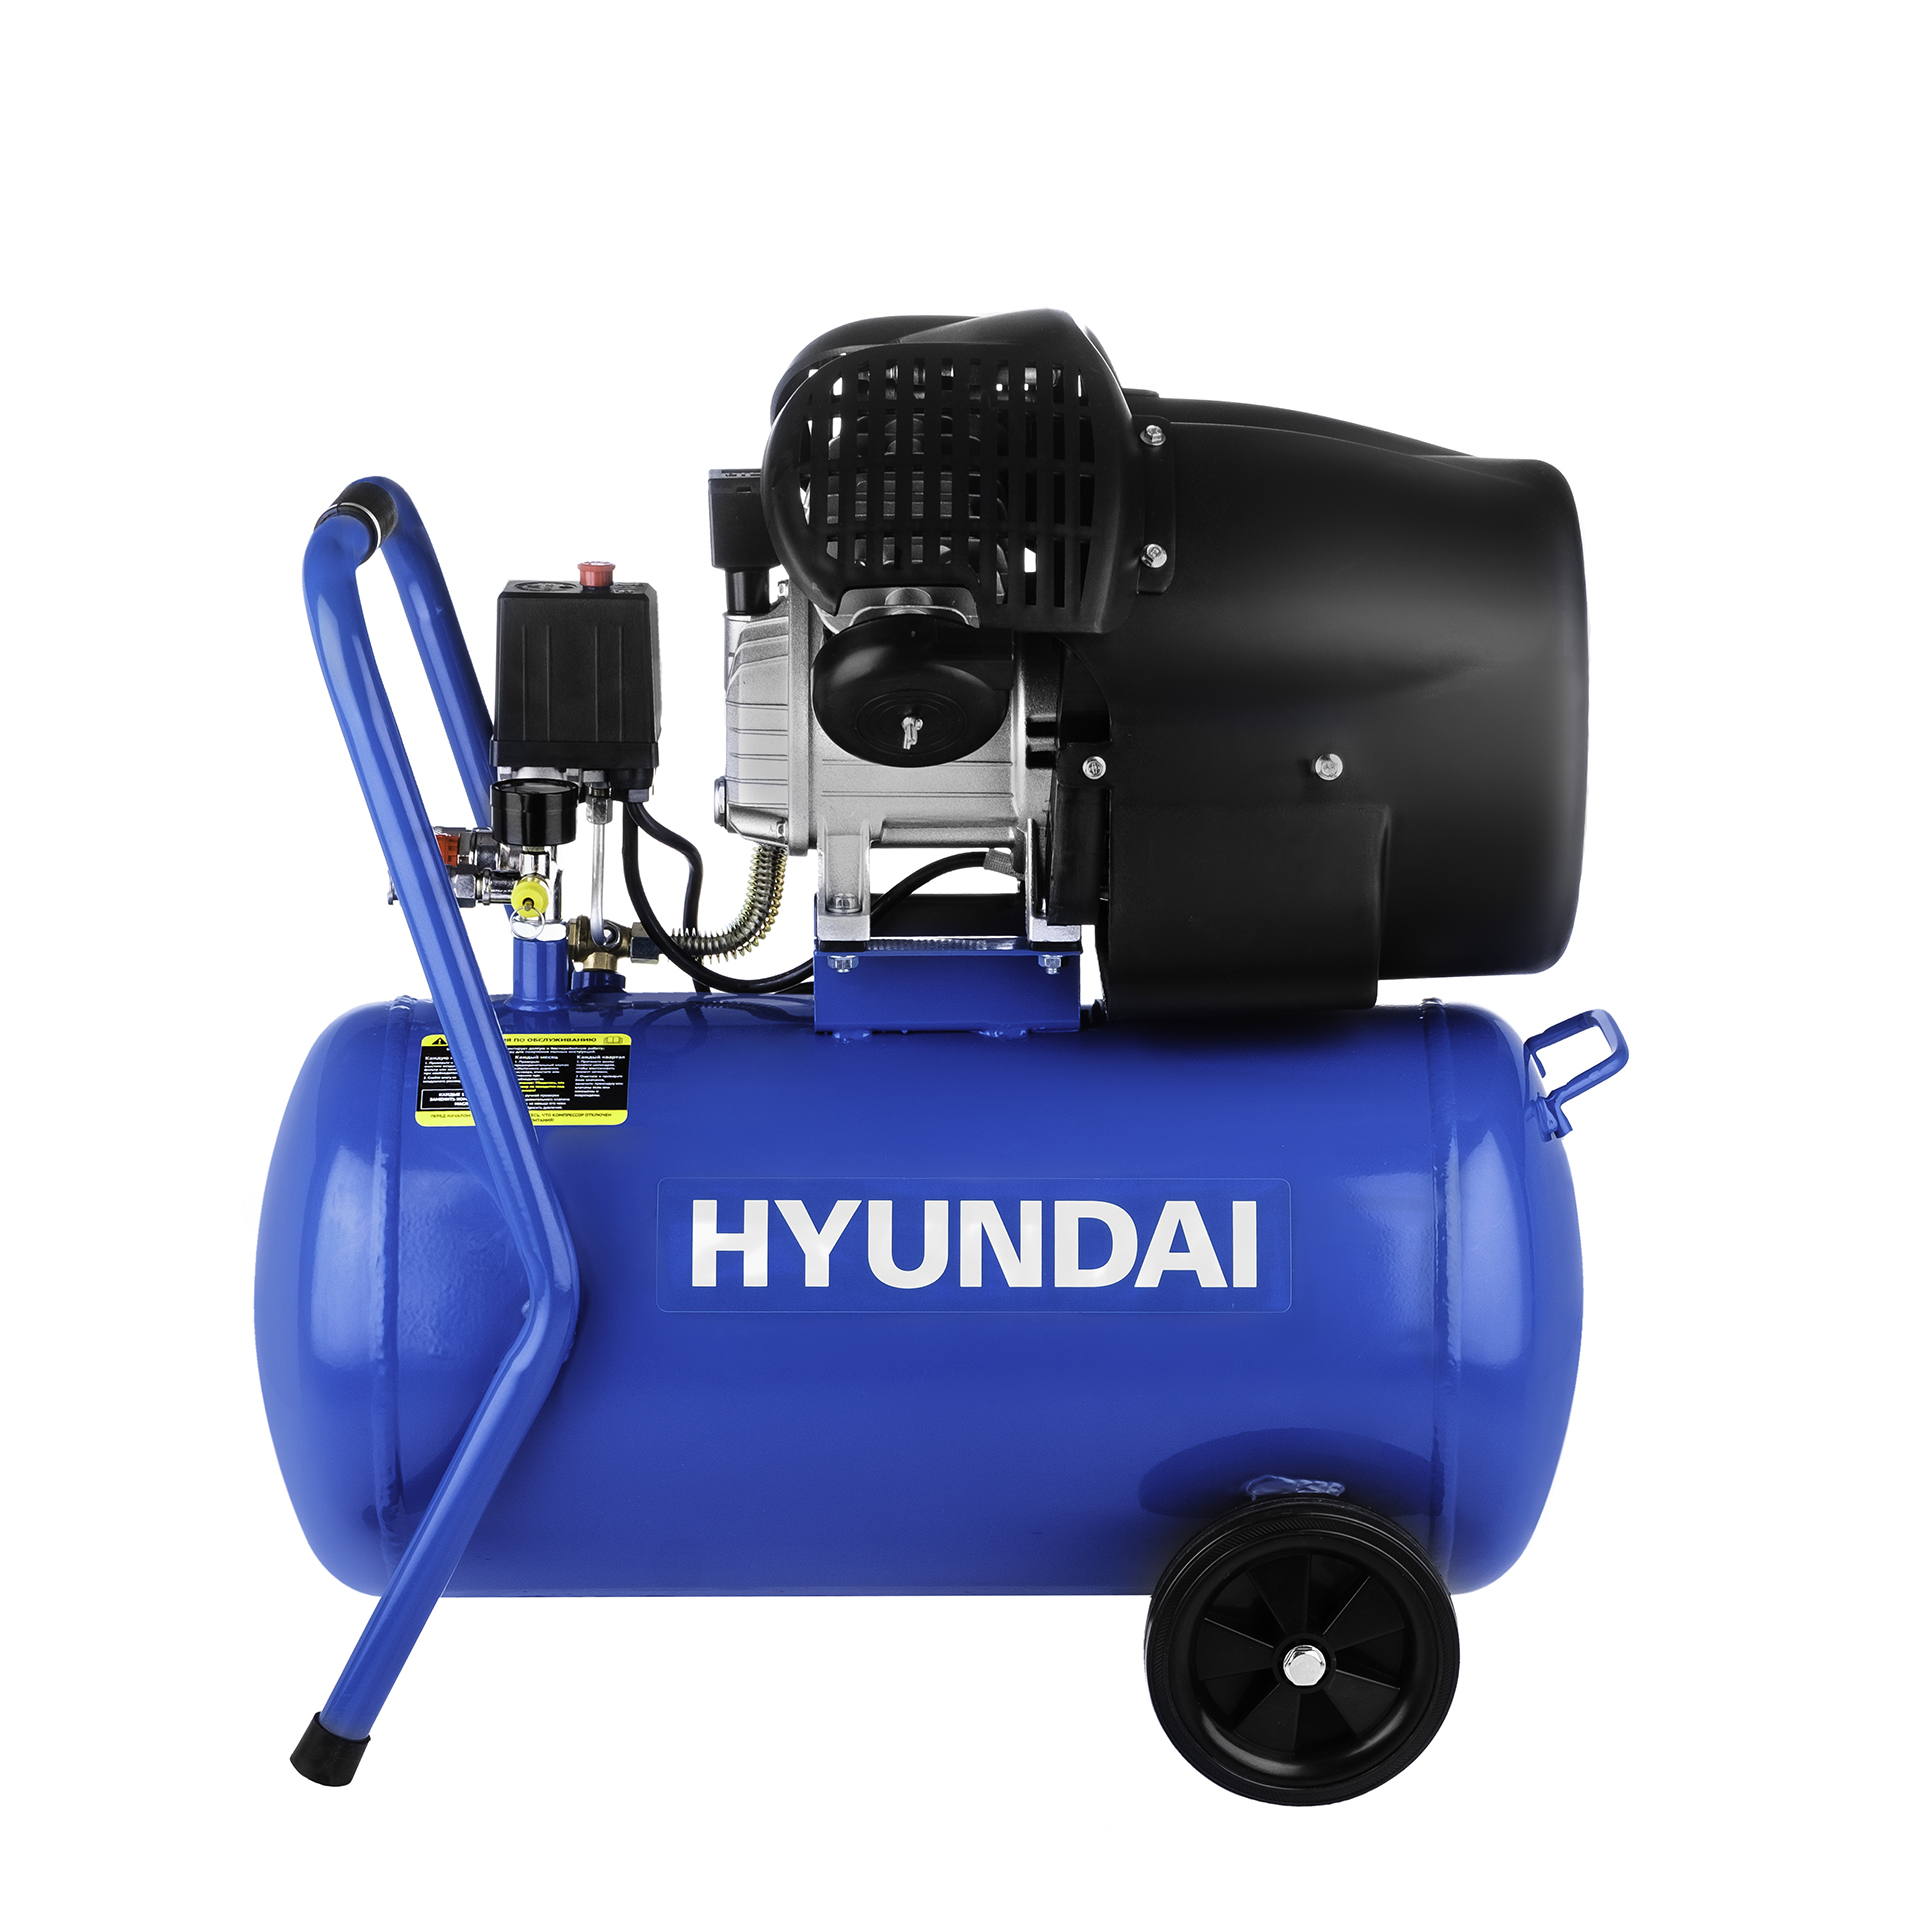 Воздушный компрессор масляный Hyundai HYC 4050 компрессор масляный воздушный fubag dc 320 24 cm2 5 614319530